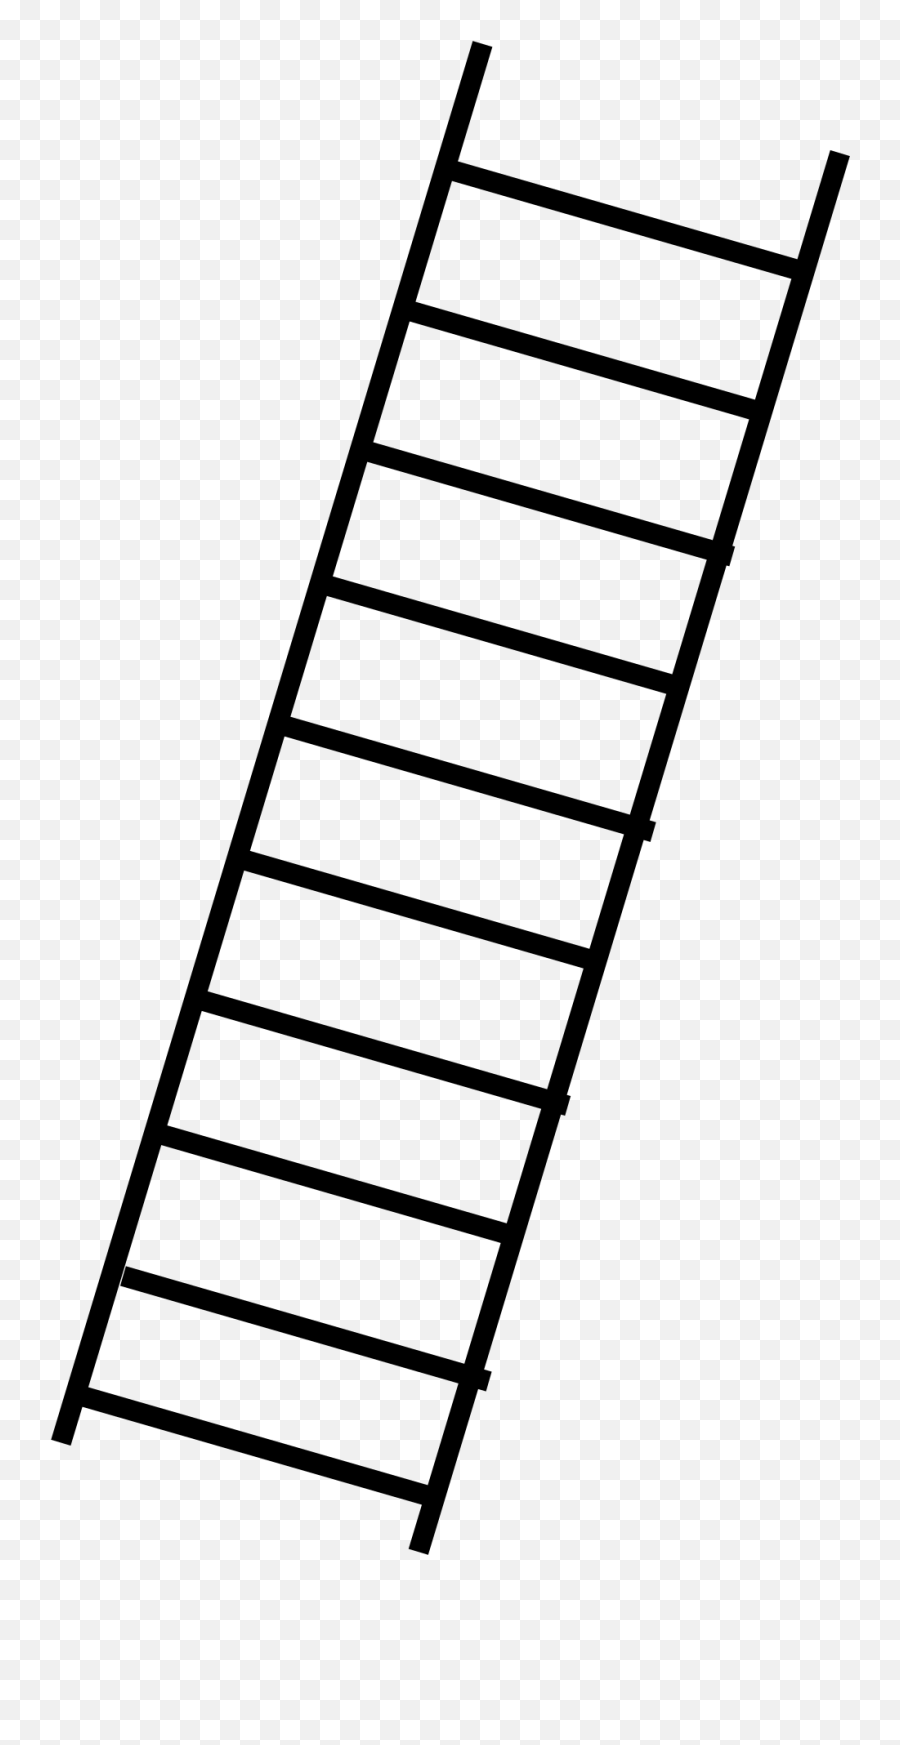 Ladder Clipart Ledder Ladder Ledder Transparent Free For - Snakes And Ladders Ladder Emoji,Ladder Emoji